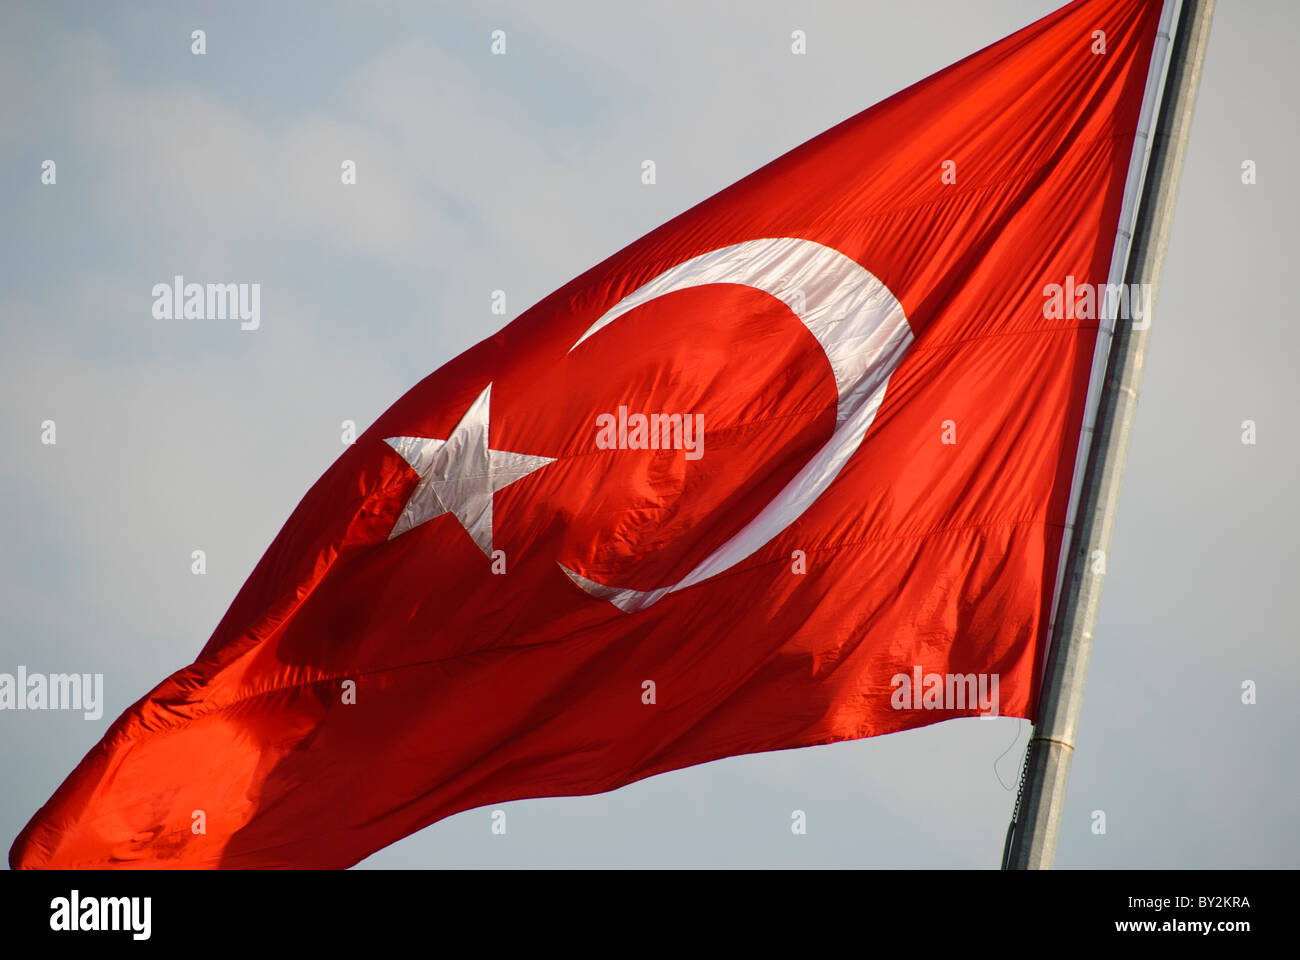 Die Flagge Der Turkei In Turkisch Als Ay Yildiz Mond Sterne Oder Albayrak Rote Fahne Bekannt Stockfotografie Alamy